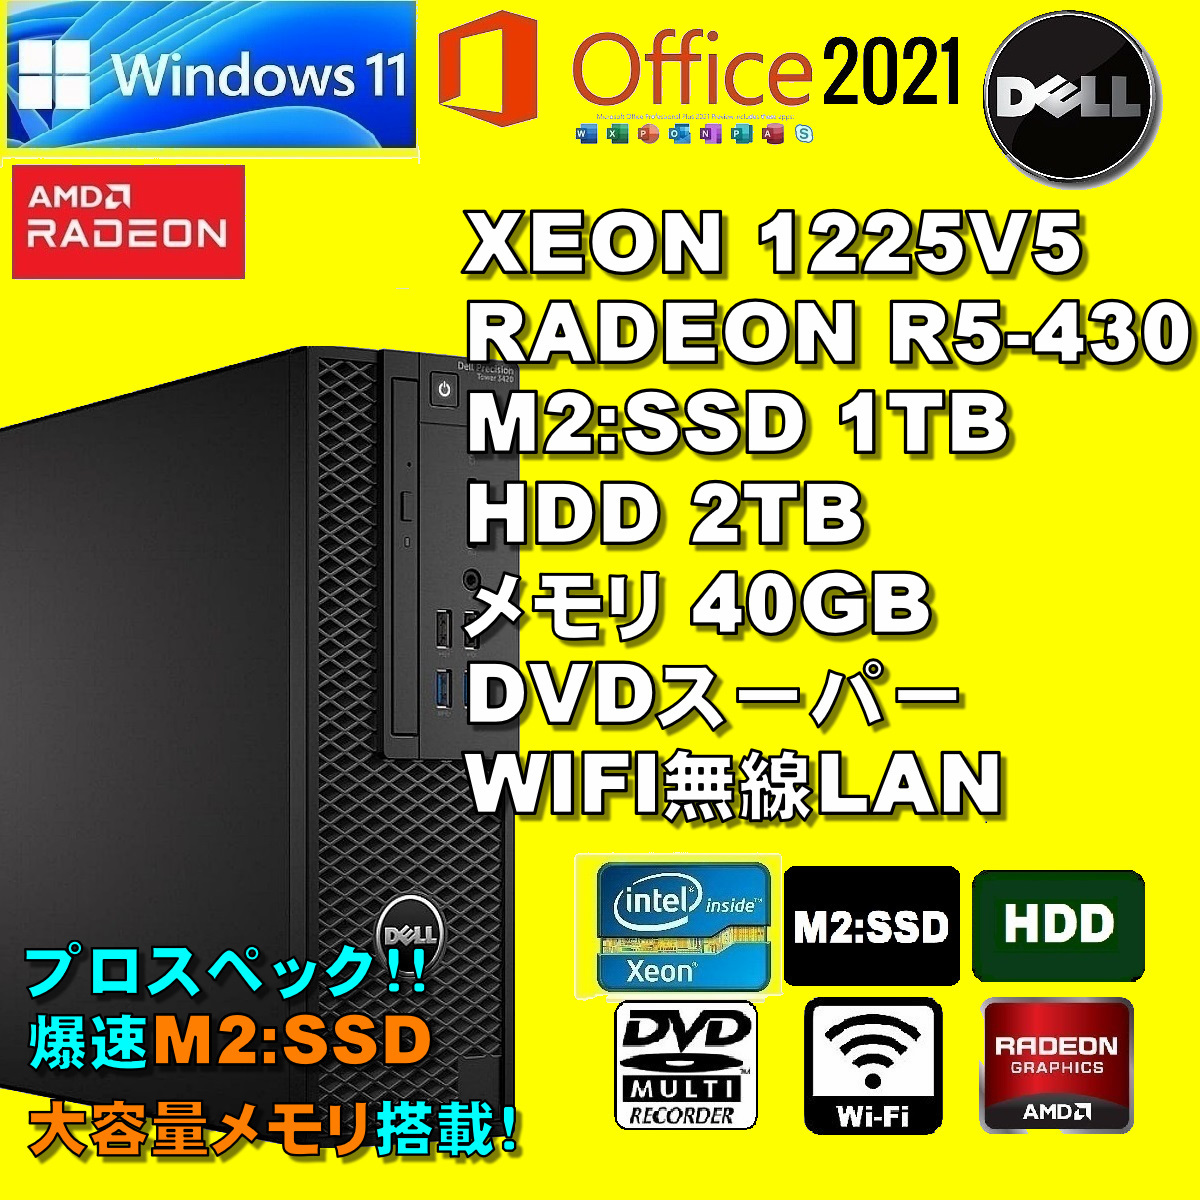 プロスペック! XEON-1225V5/ 新品M2:SSD-1TB/ RADEON R5-430/ HDD-2TB/ メモリ-40GB/ DVDRW/ WIFI/ Win11/ Office2021/ メディア15/ 税無_画像1